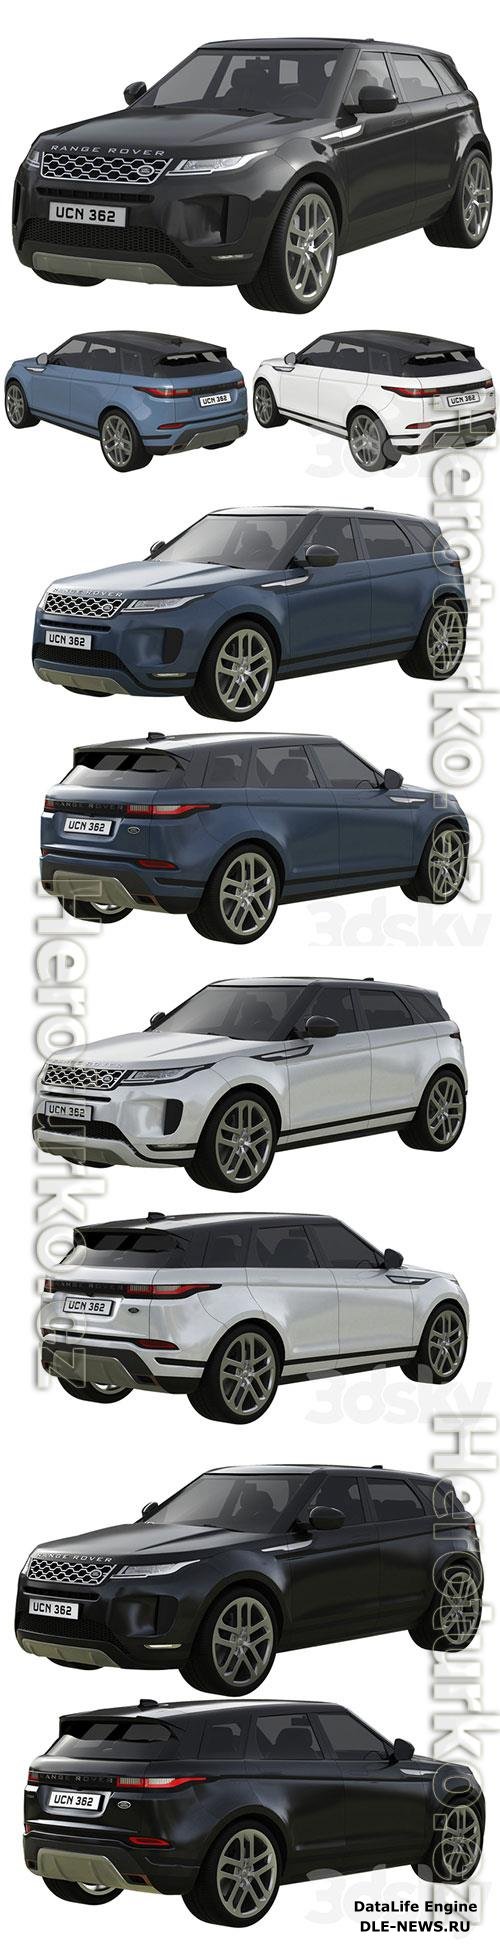 Range Rover Land Rover Evoque 3D Model